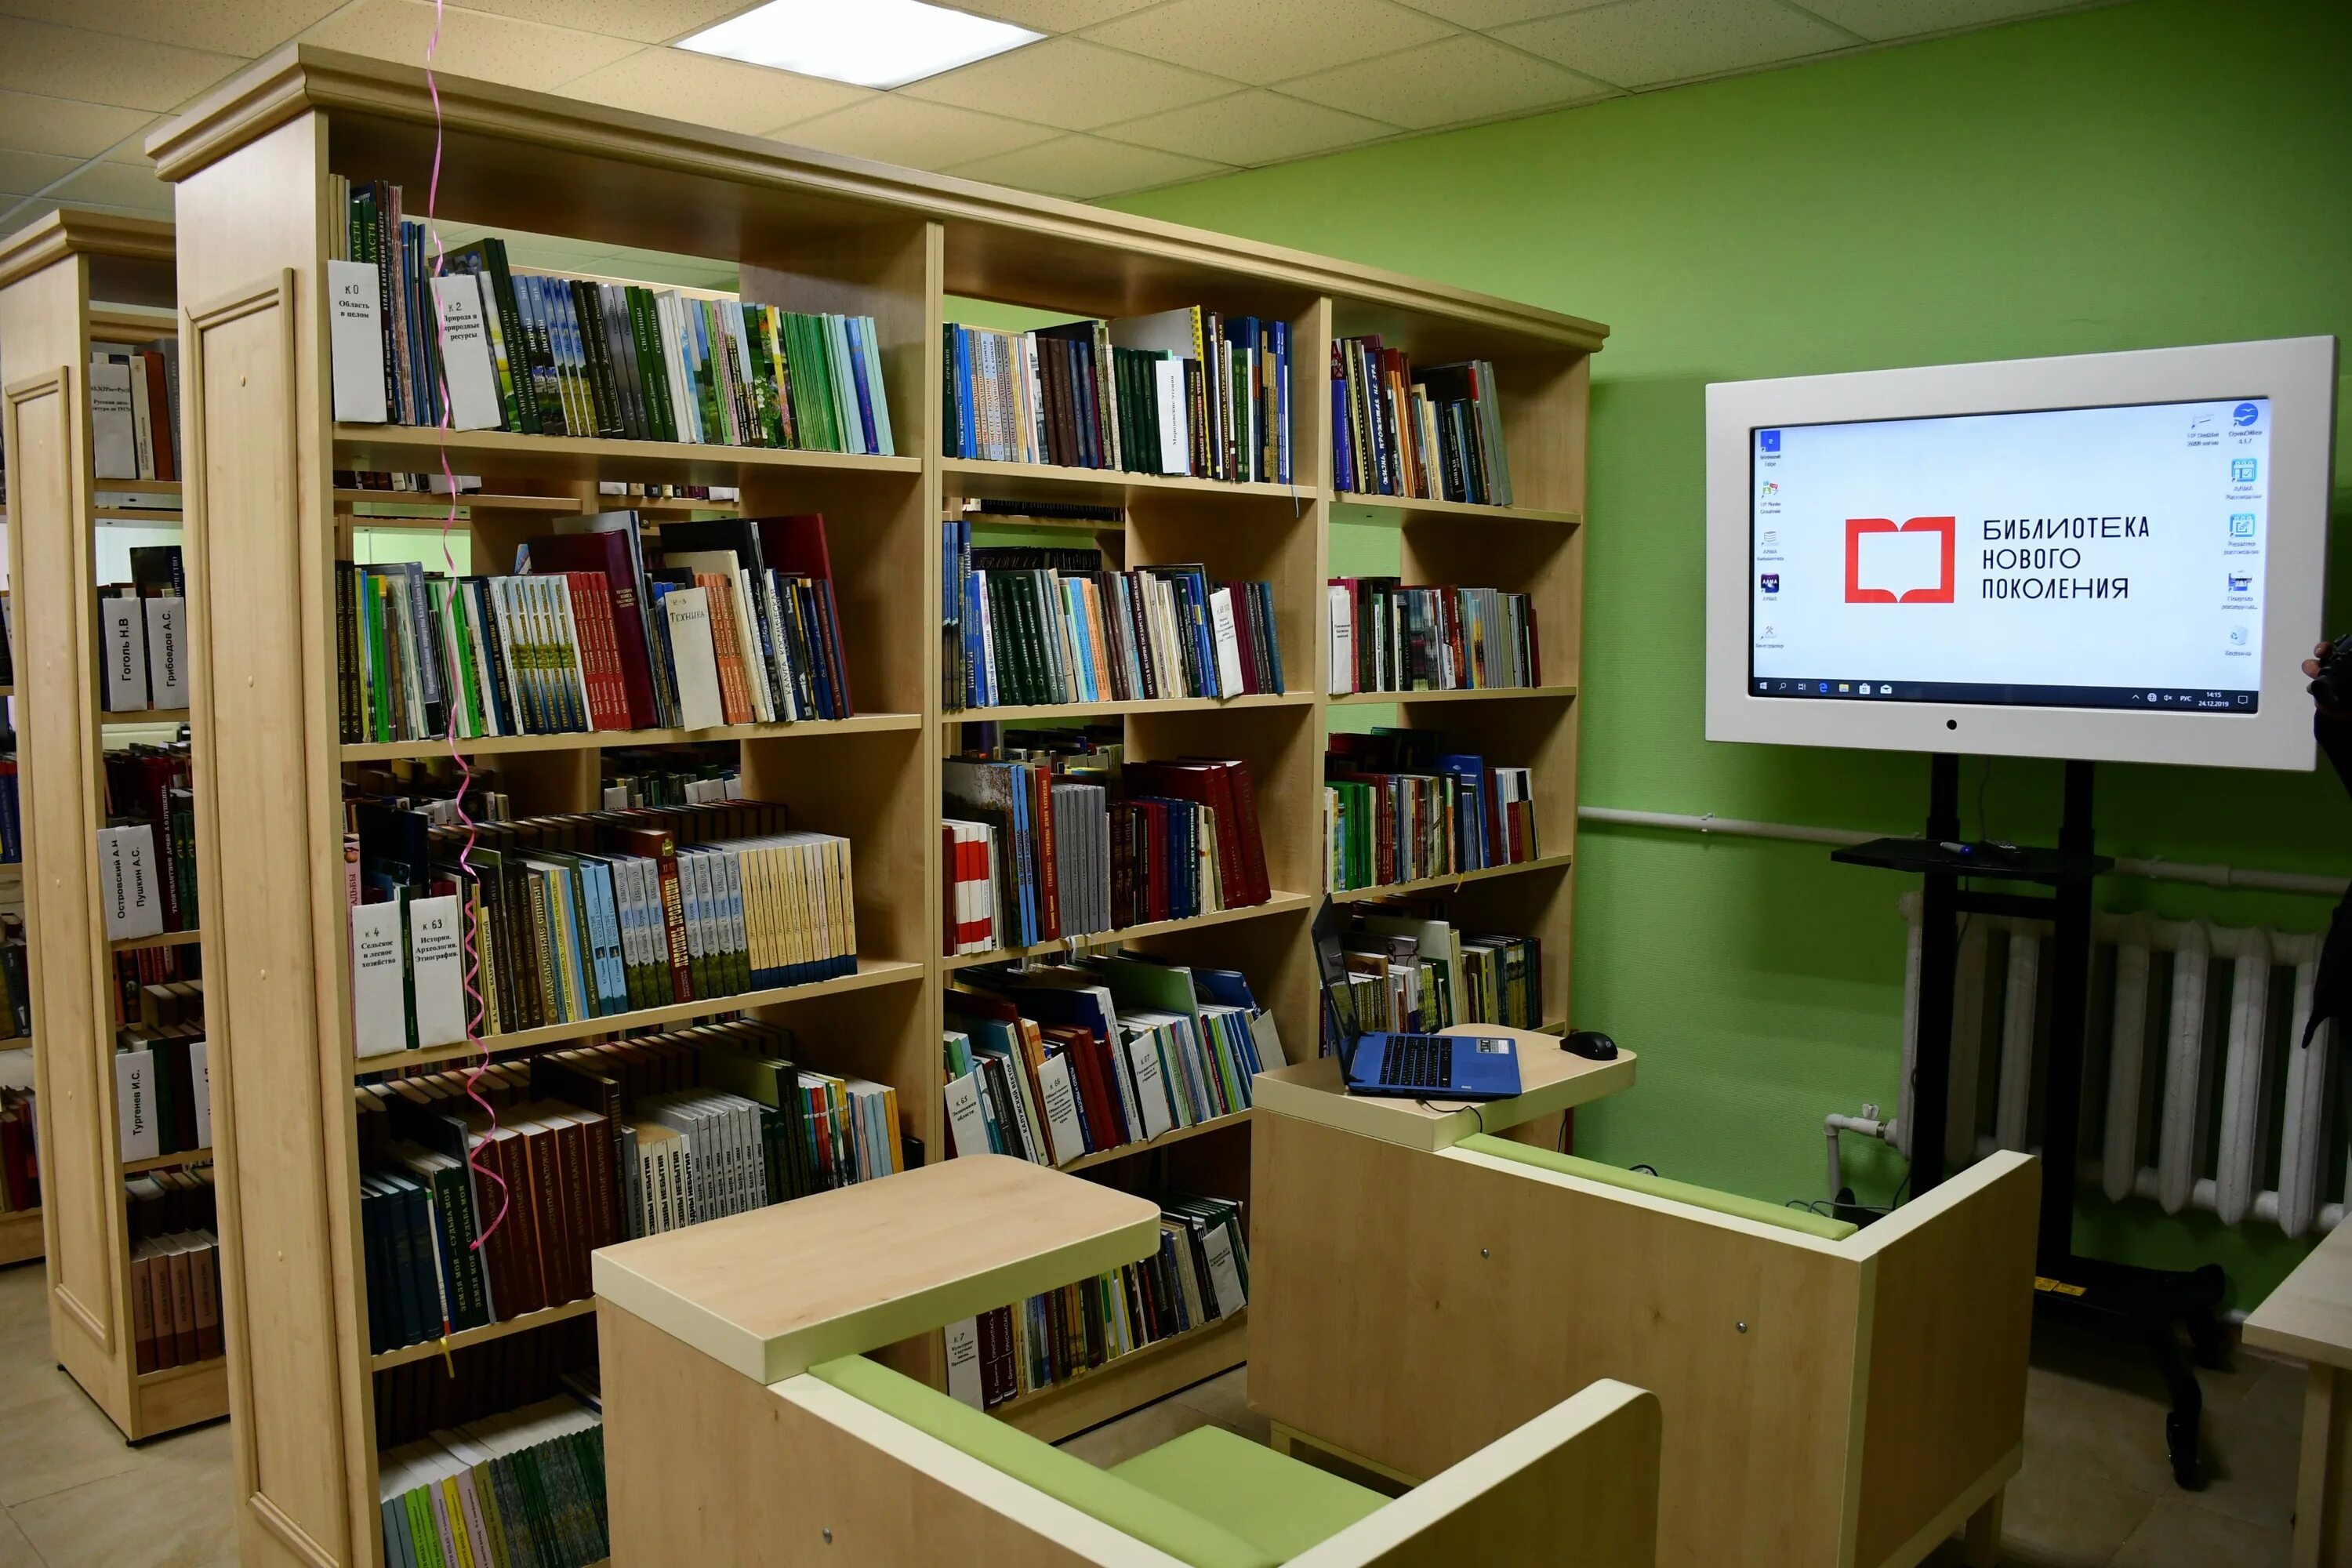 Лаврид библиотека новый. Модельная библиотека. Библиотека нового поколения. Муниципальная библиотека. Современная Российская библиотека.